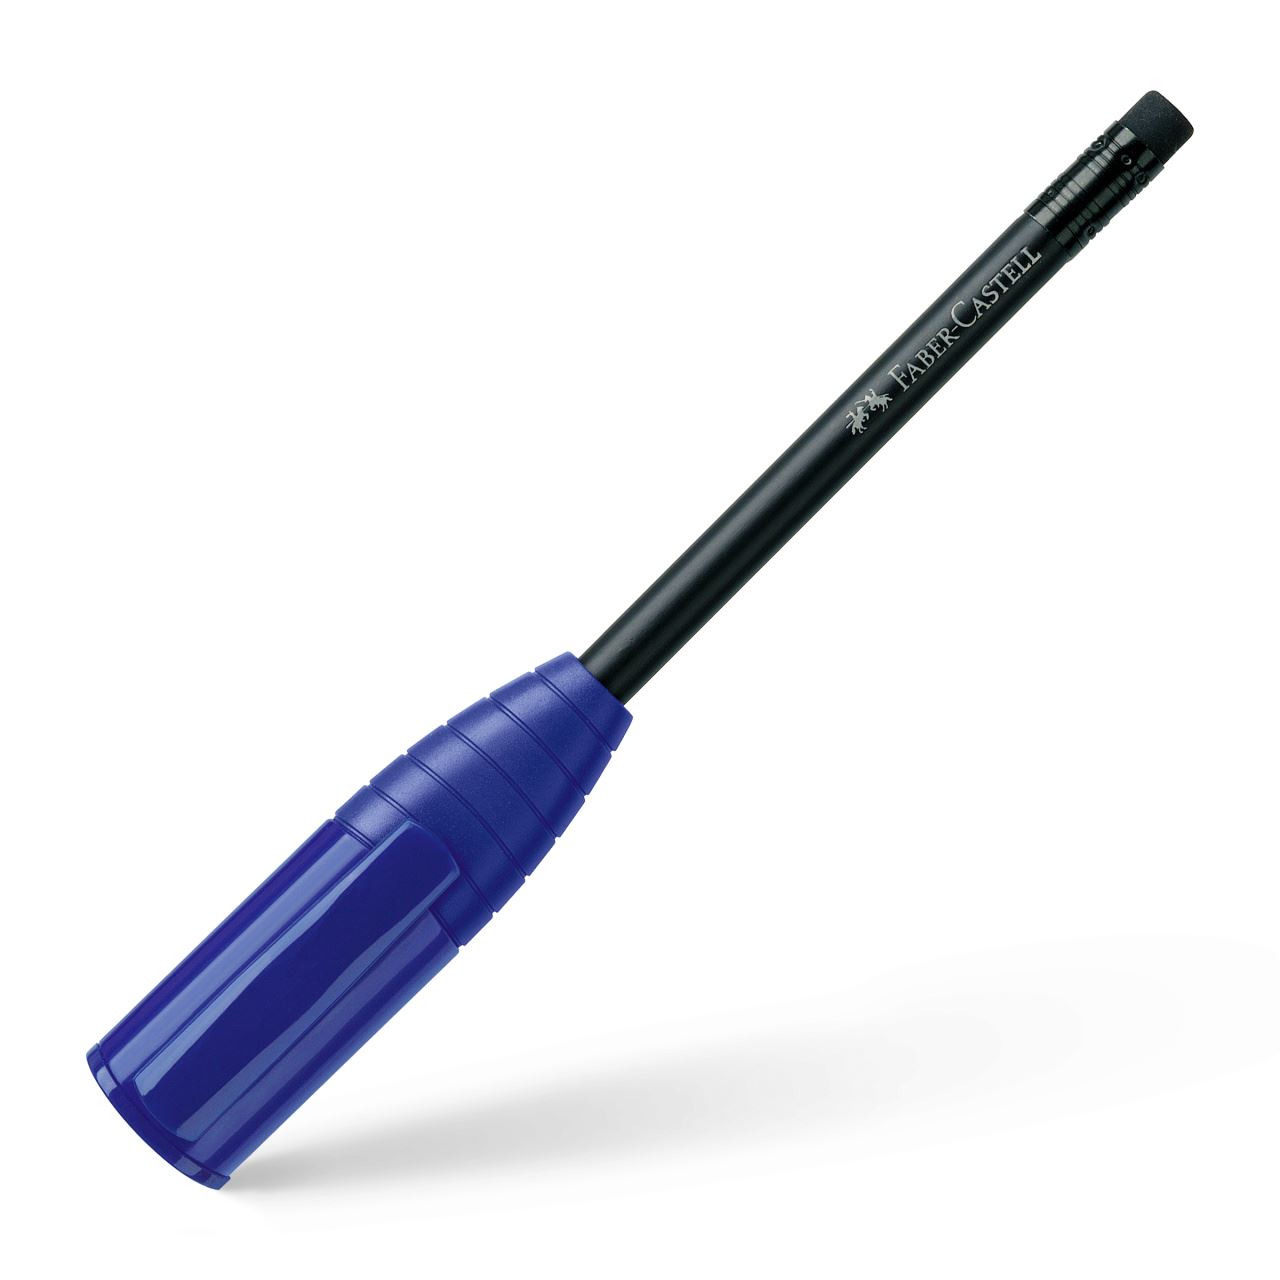 Faber-Castell - Crayon perfect III bleu